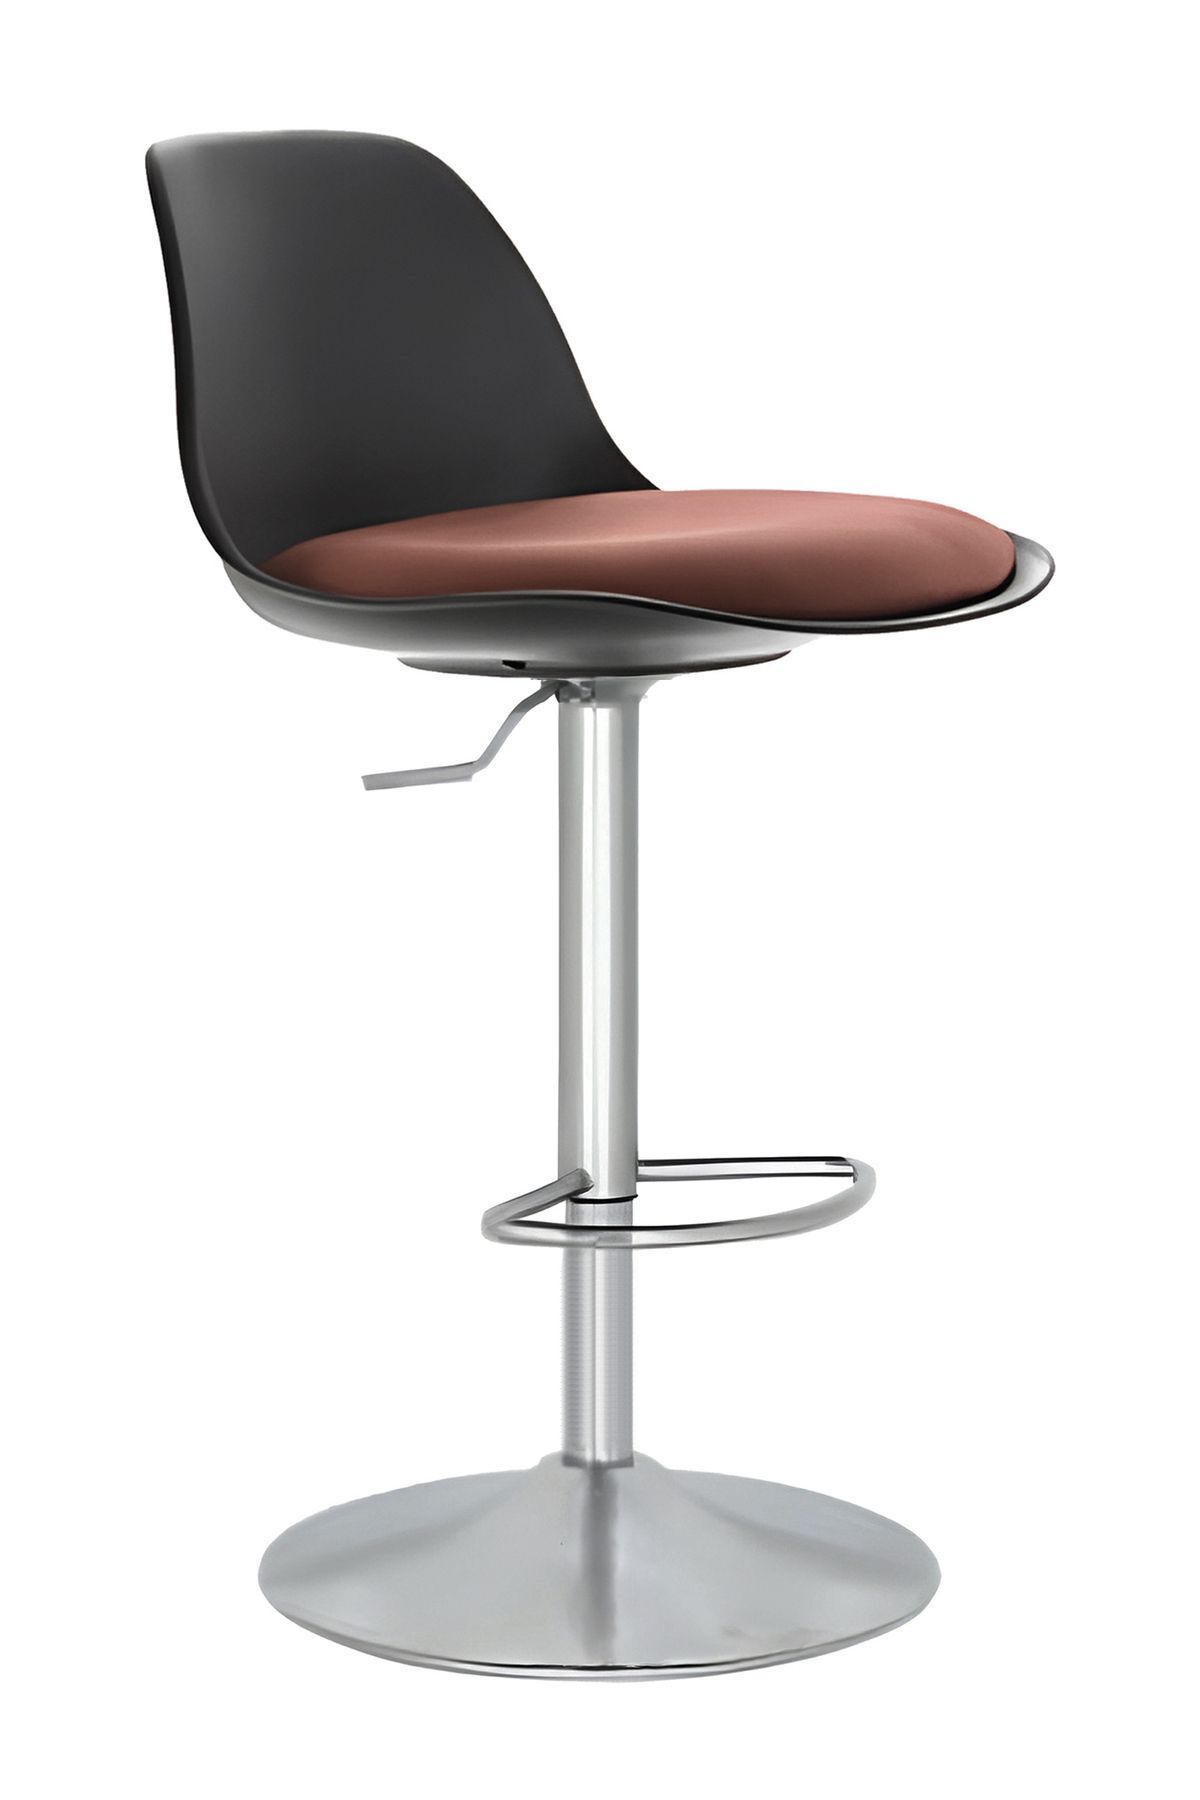 Bürocci Nadya Bar Sandalyesi - Kahverengi Deri - Metal Ayaklı Bar Taburesi - 9537s0121